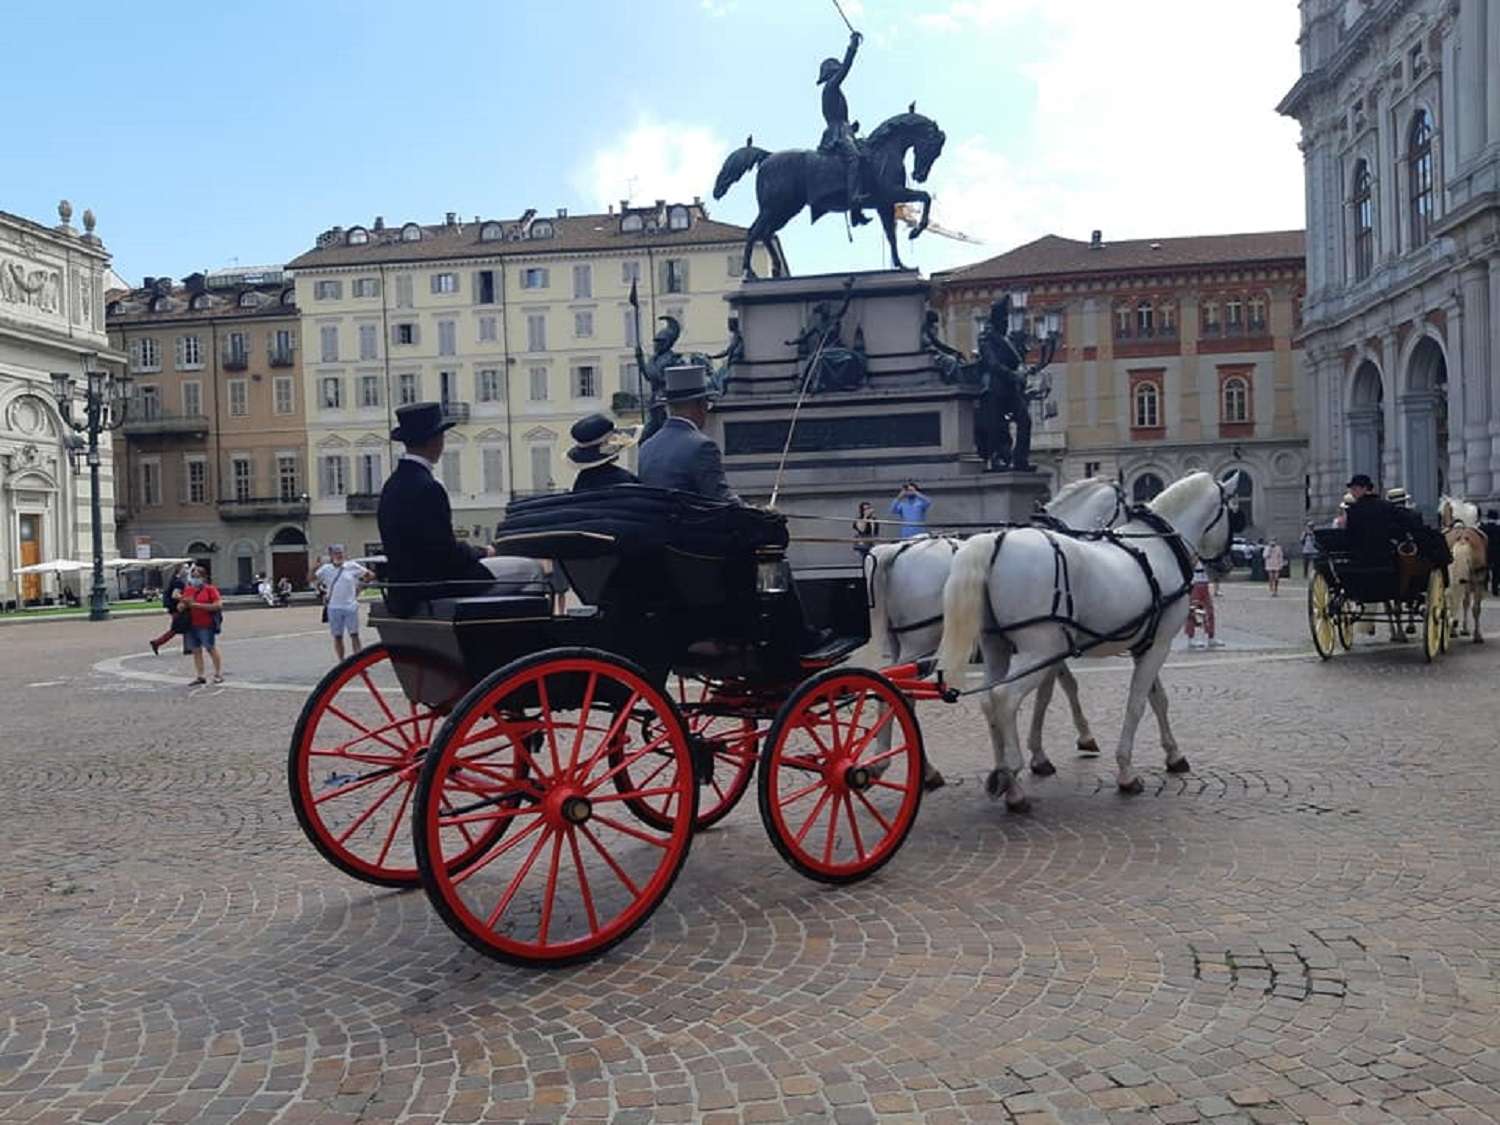 Torino indietro nel tempo con la sfilata delle carrozze storiche